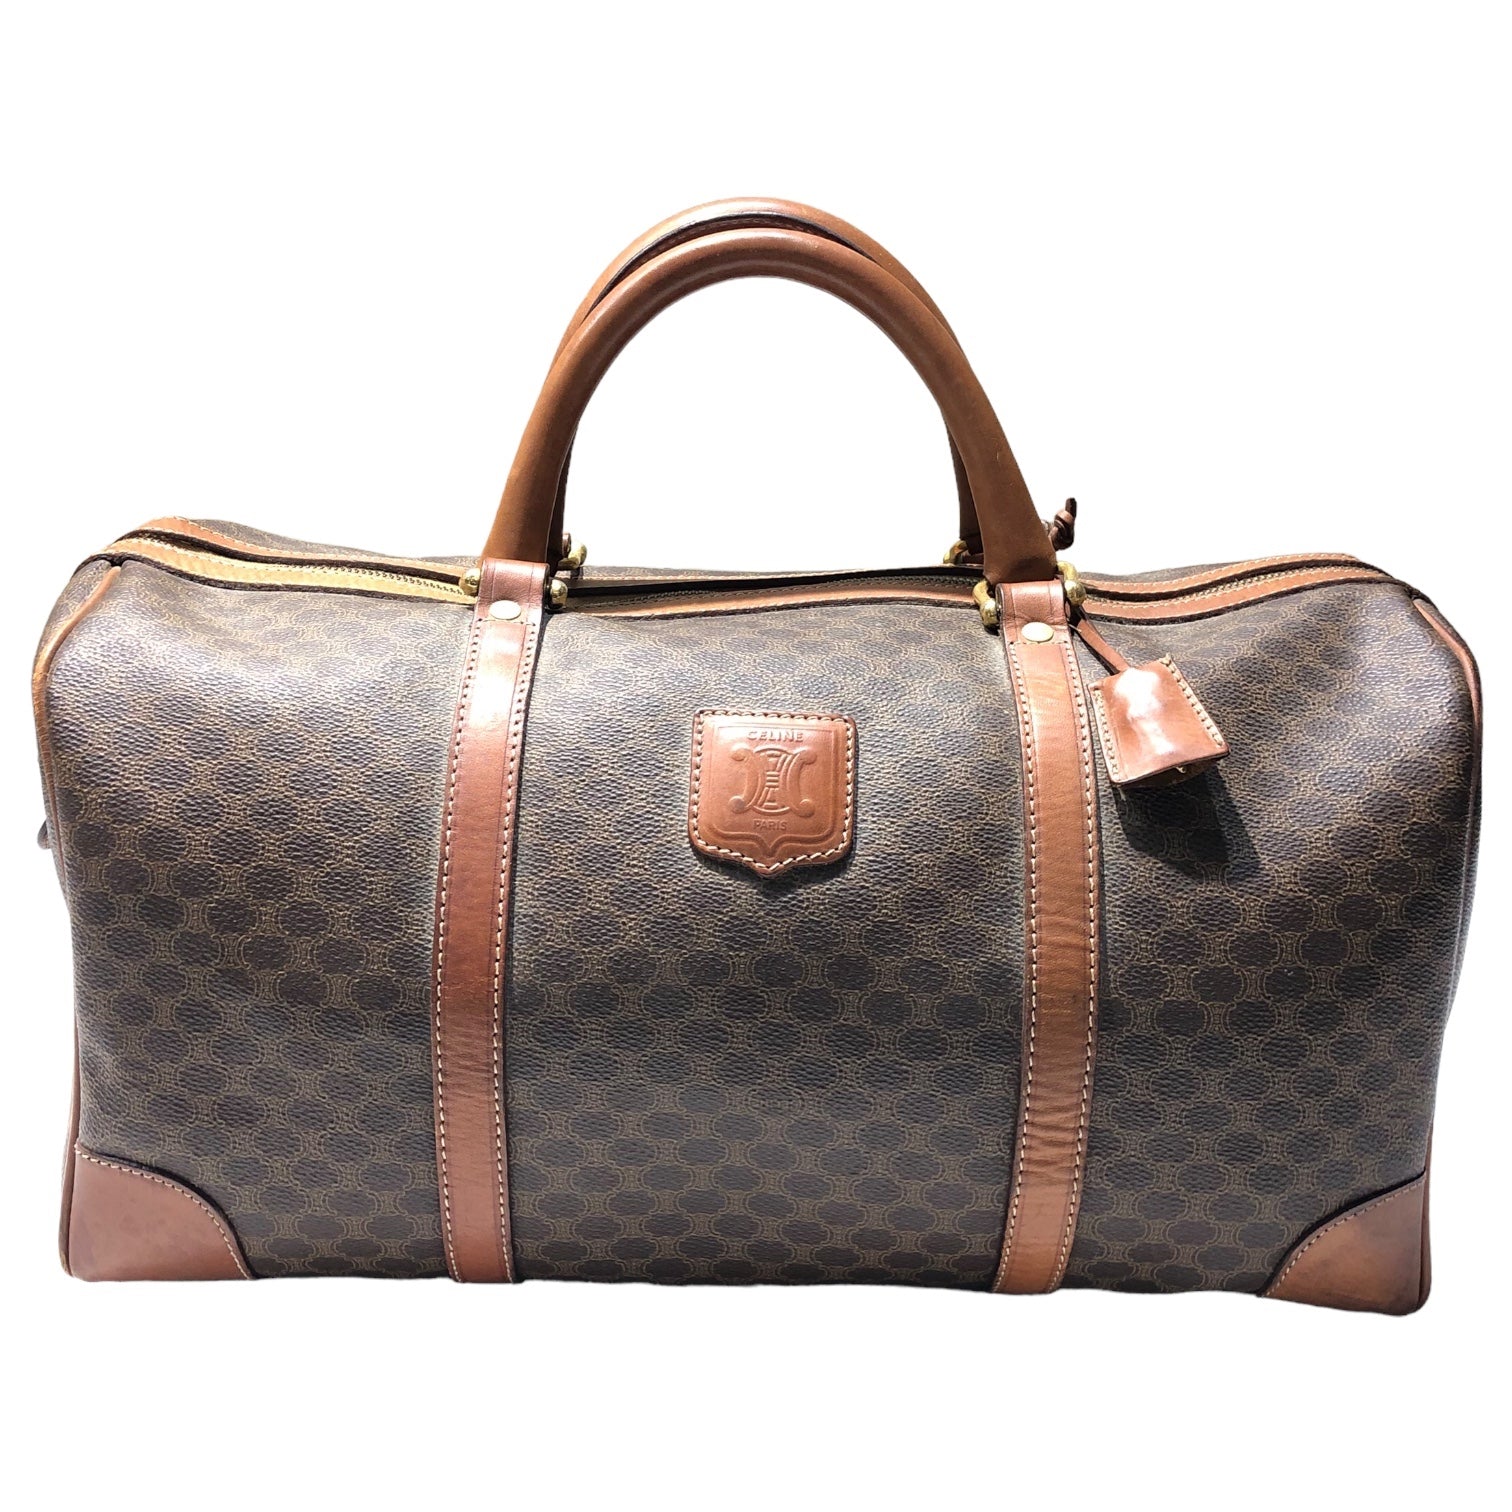 CELINE(セリーヌ) macadam pattern boston bag マカダム柄 ボストン バッグ M11 ブラウン OLD ヴィンテージ 旅行鞄